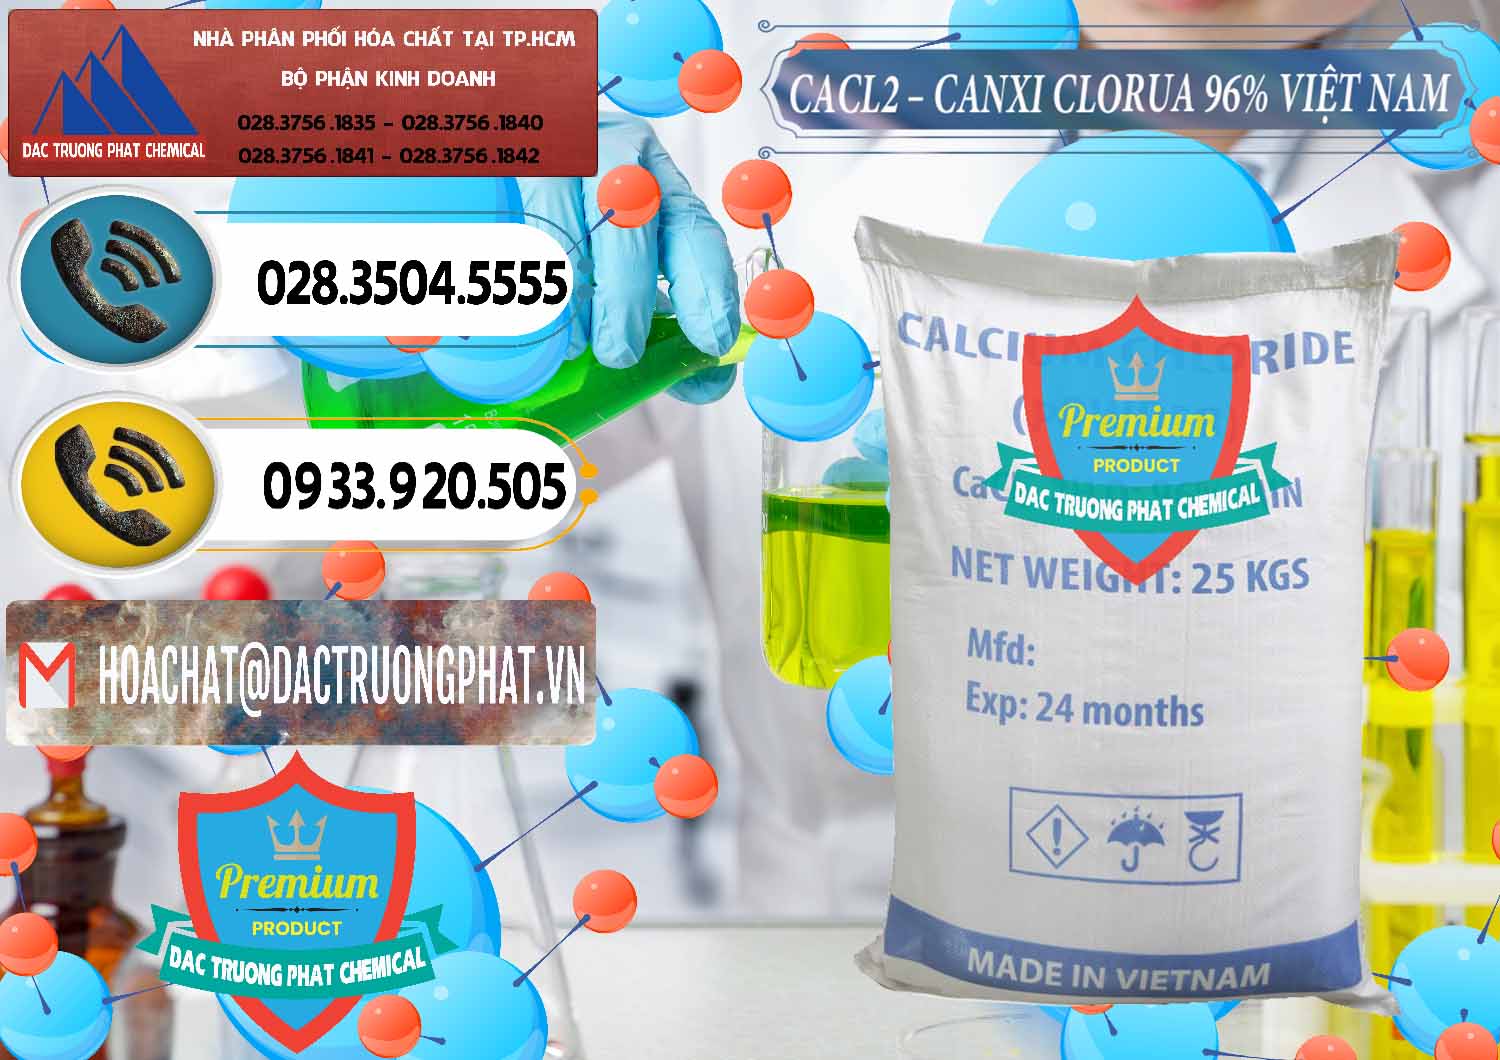 Công ty cung cấp & kinh doanh CaCl2 – Canxi Clorua 96% Việt Nam - 0236 - Cty cung cấp _ bán hóa chất tại TP.HCM - hoachatdetnhuom.vn